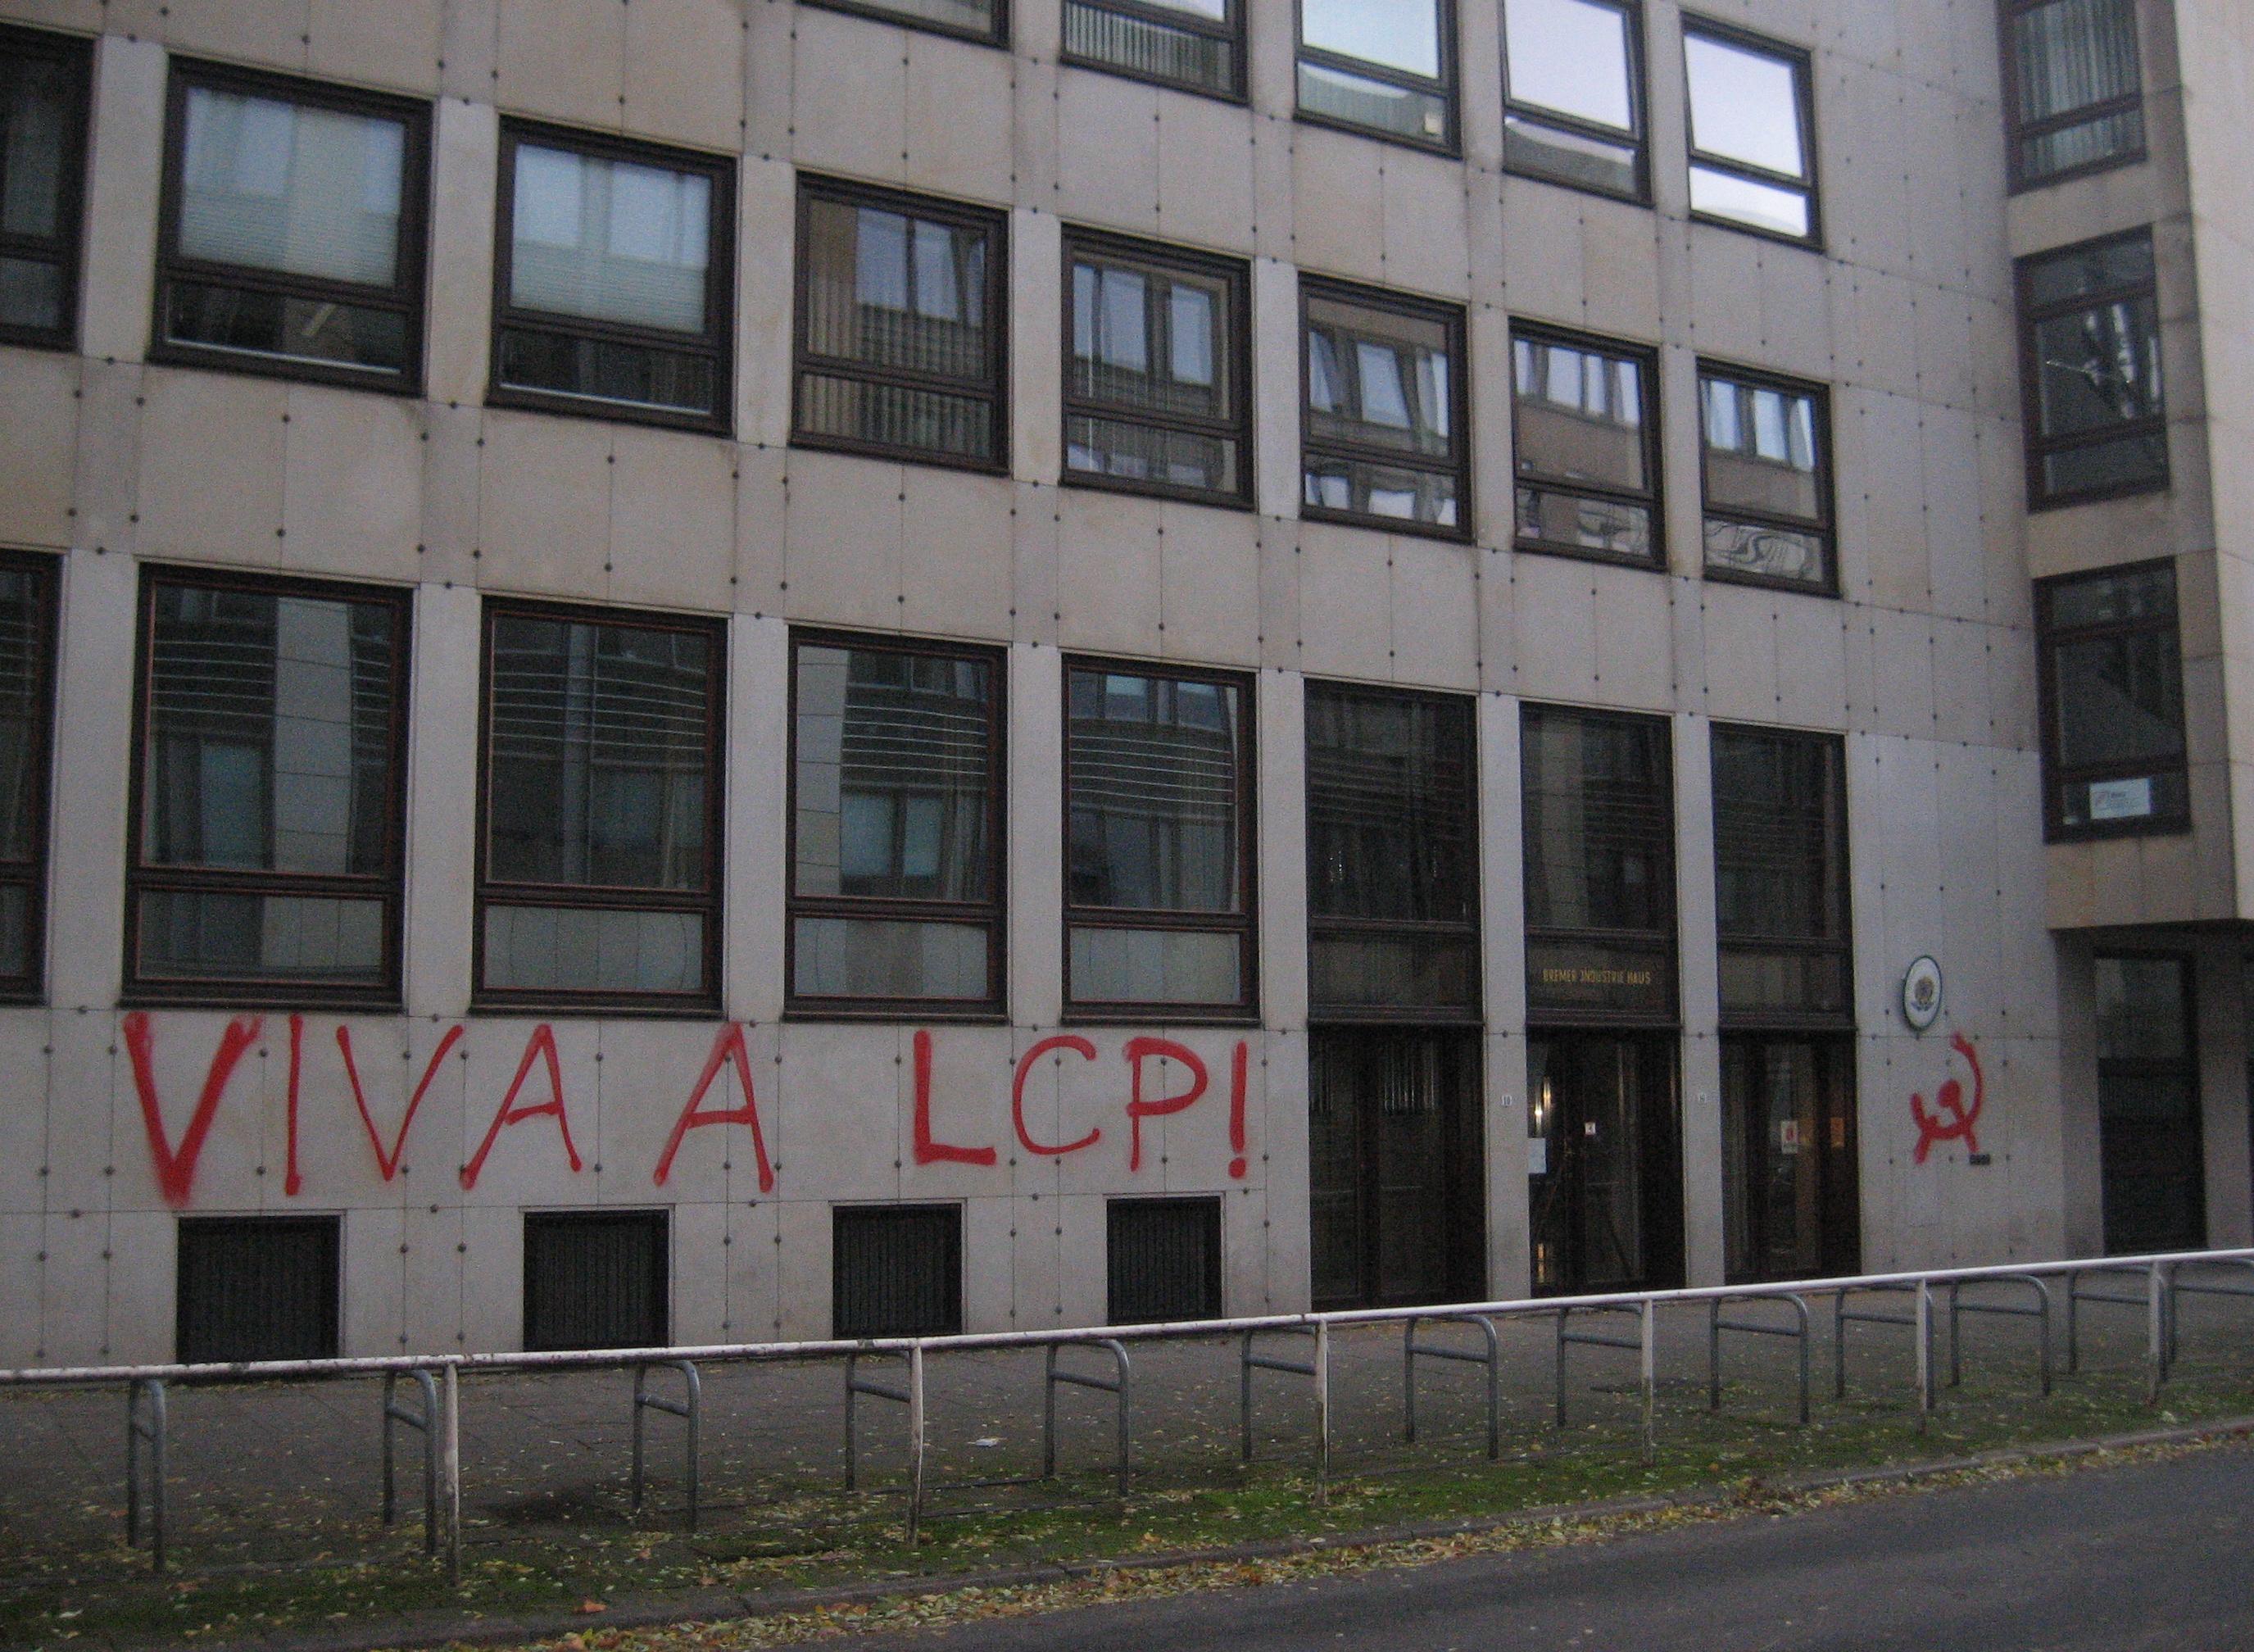 Viva a LCP Konsulat Bremen I